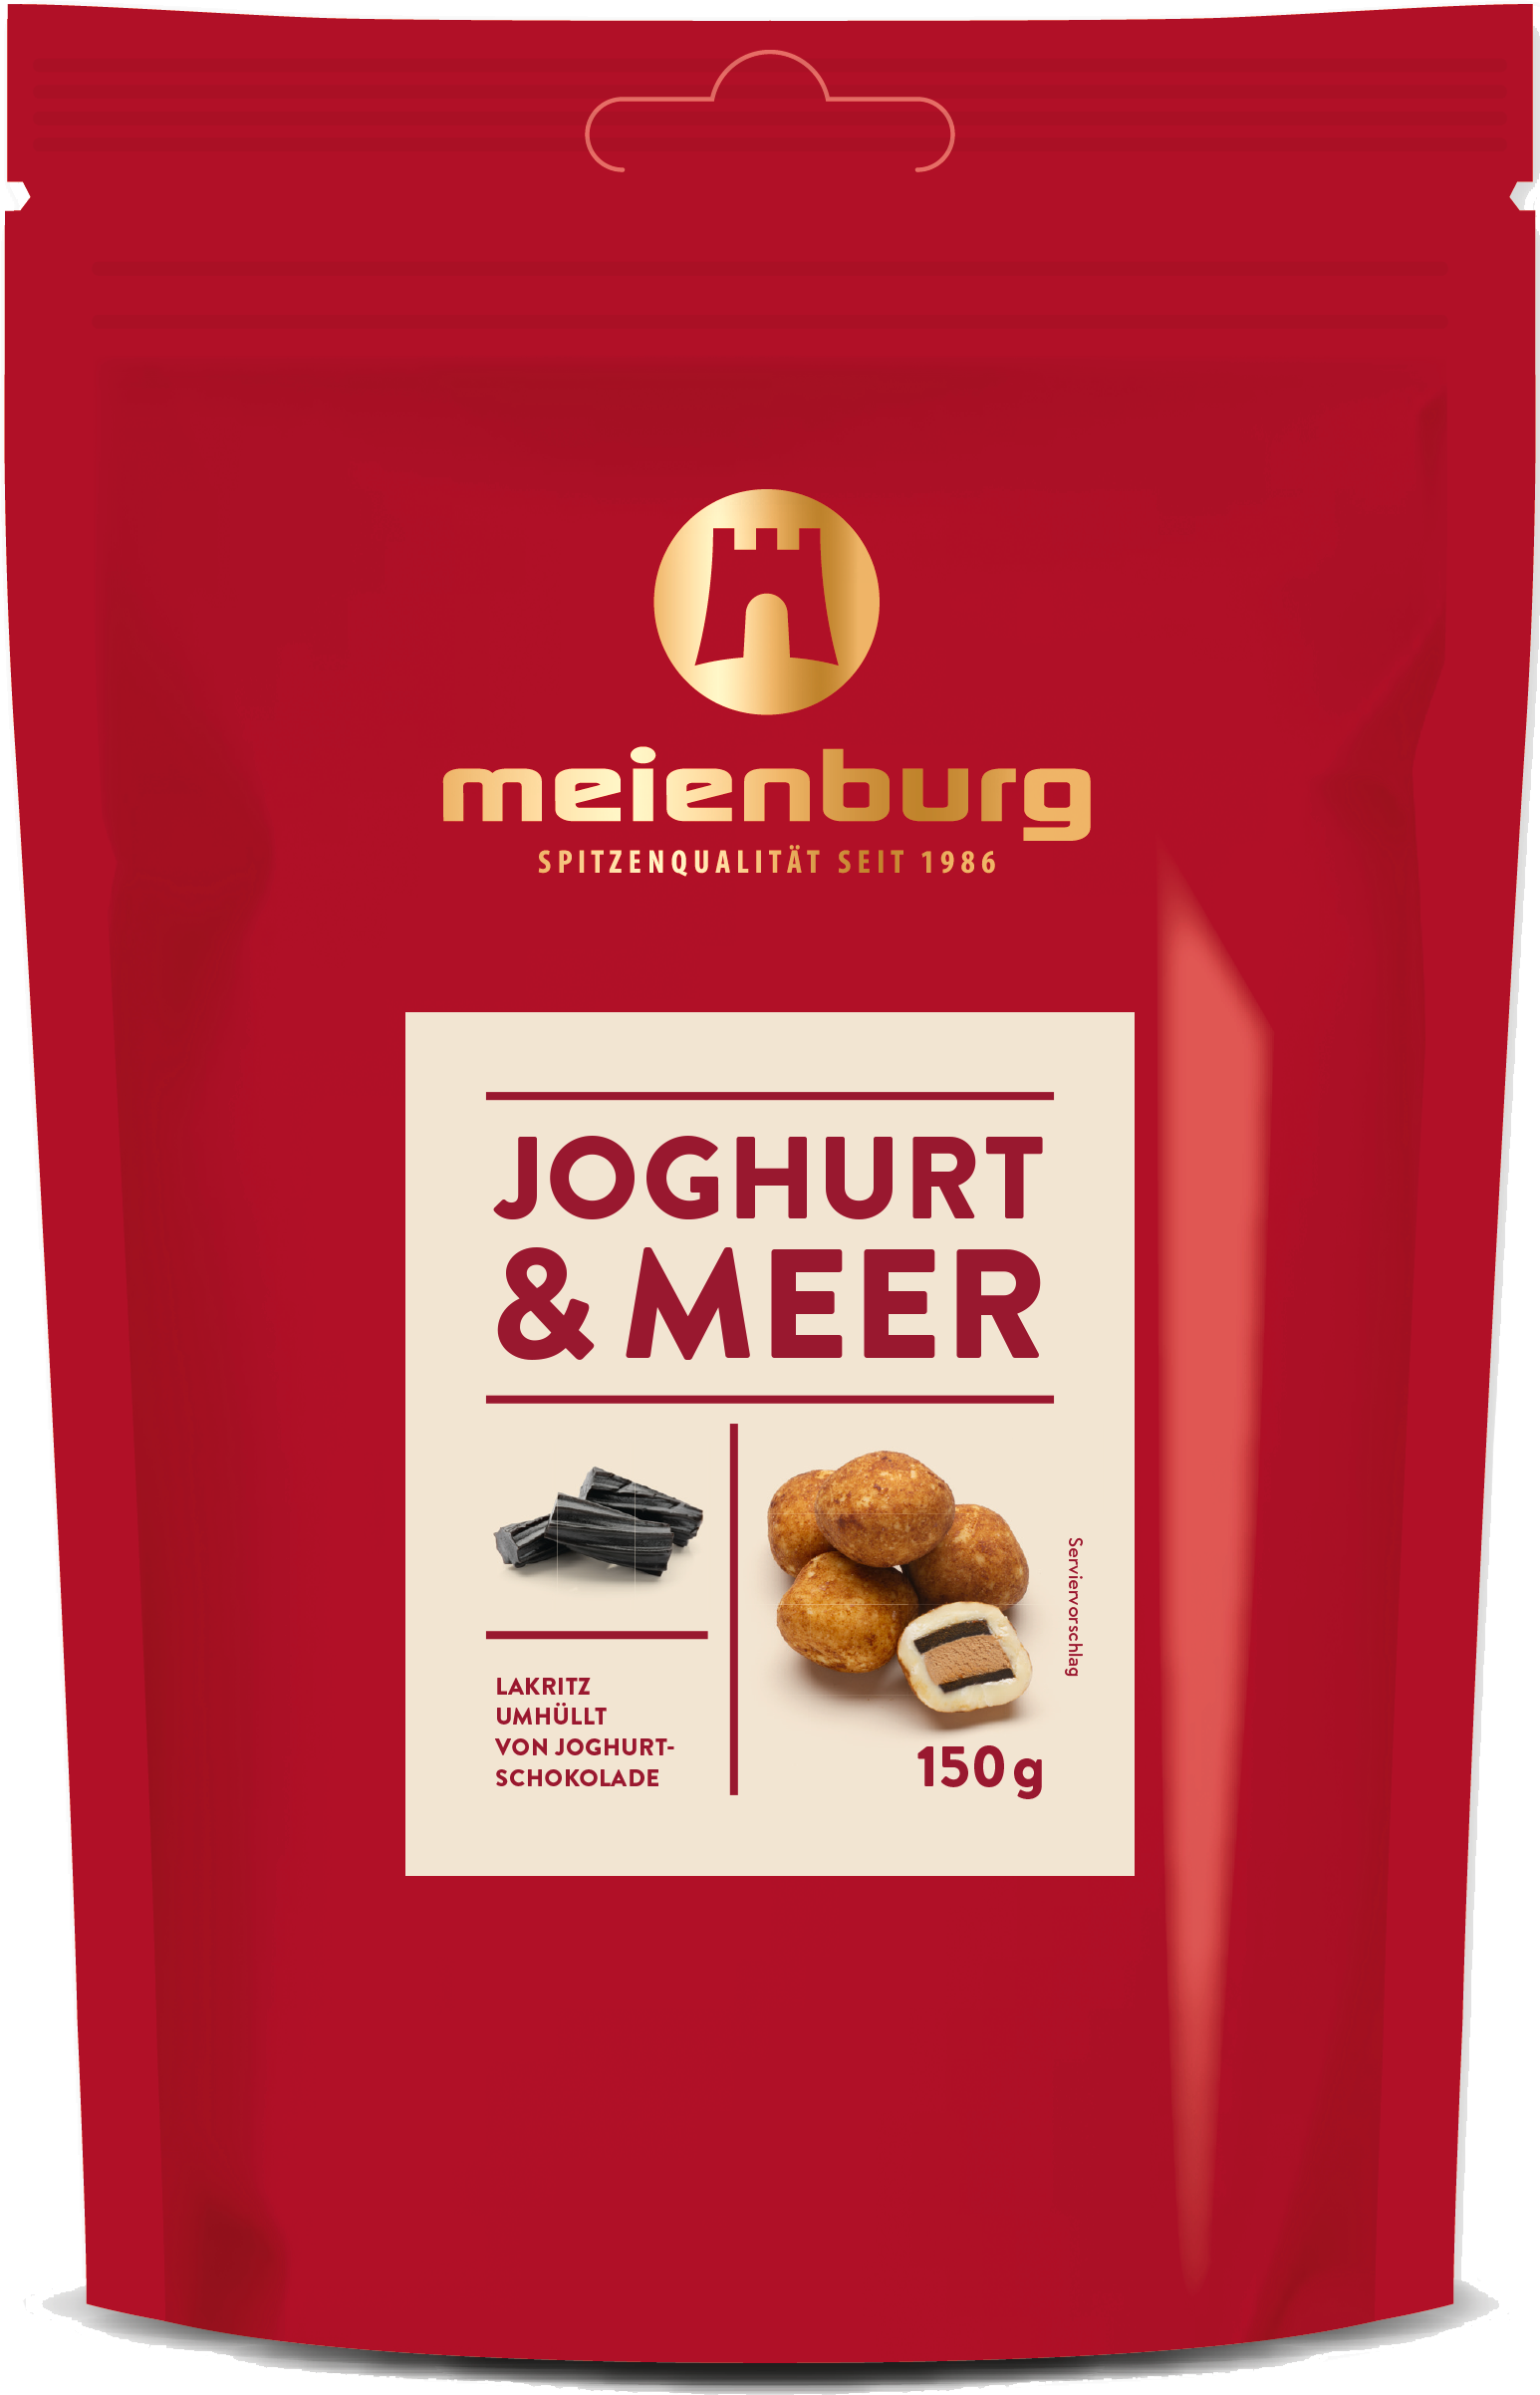 Joghurt & Meer